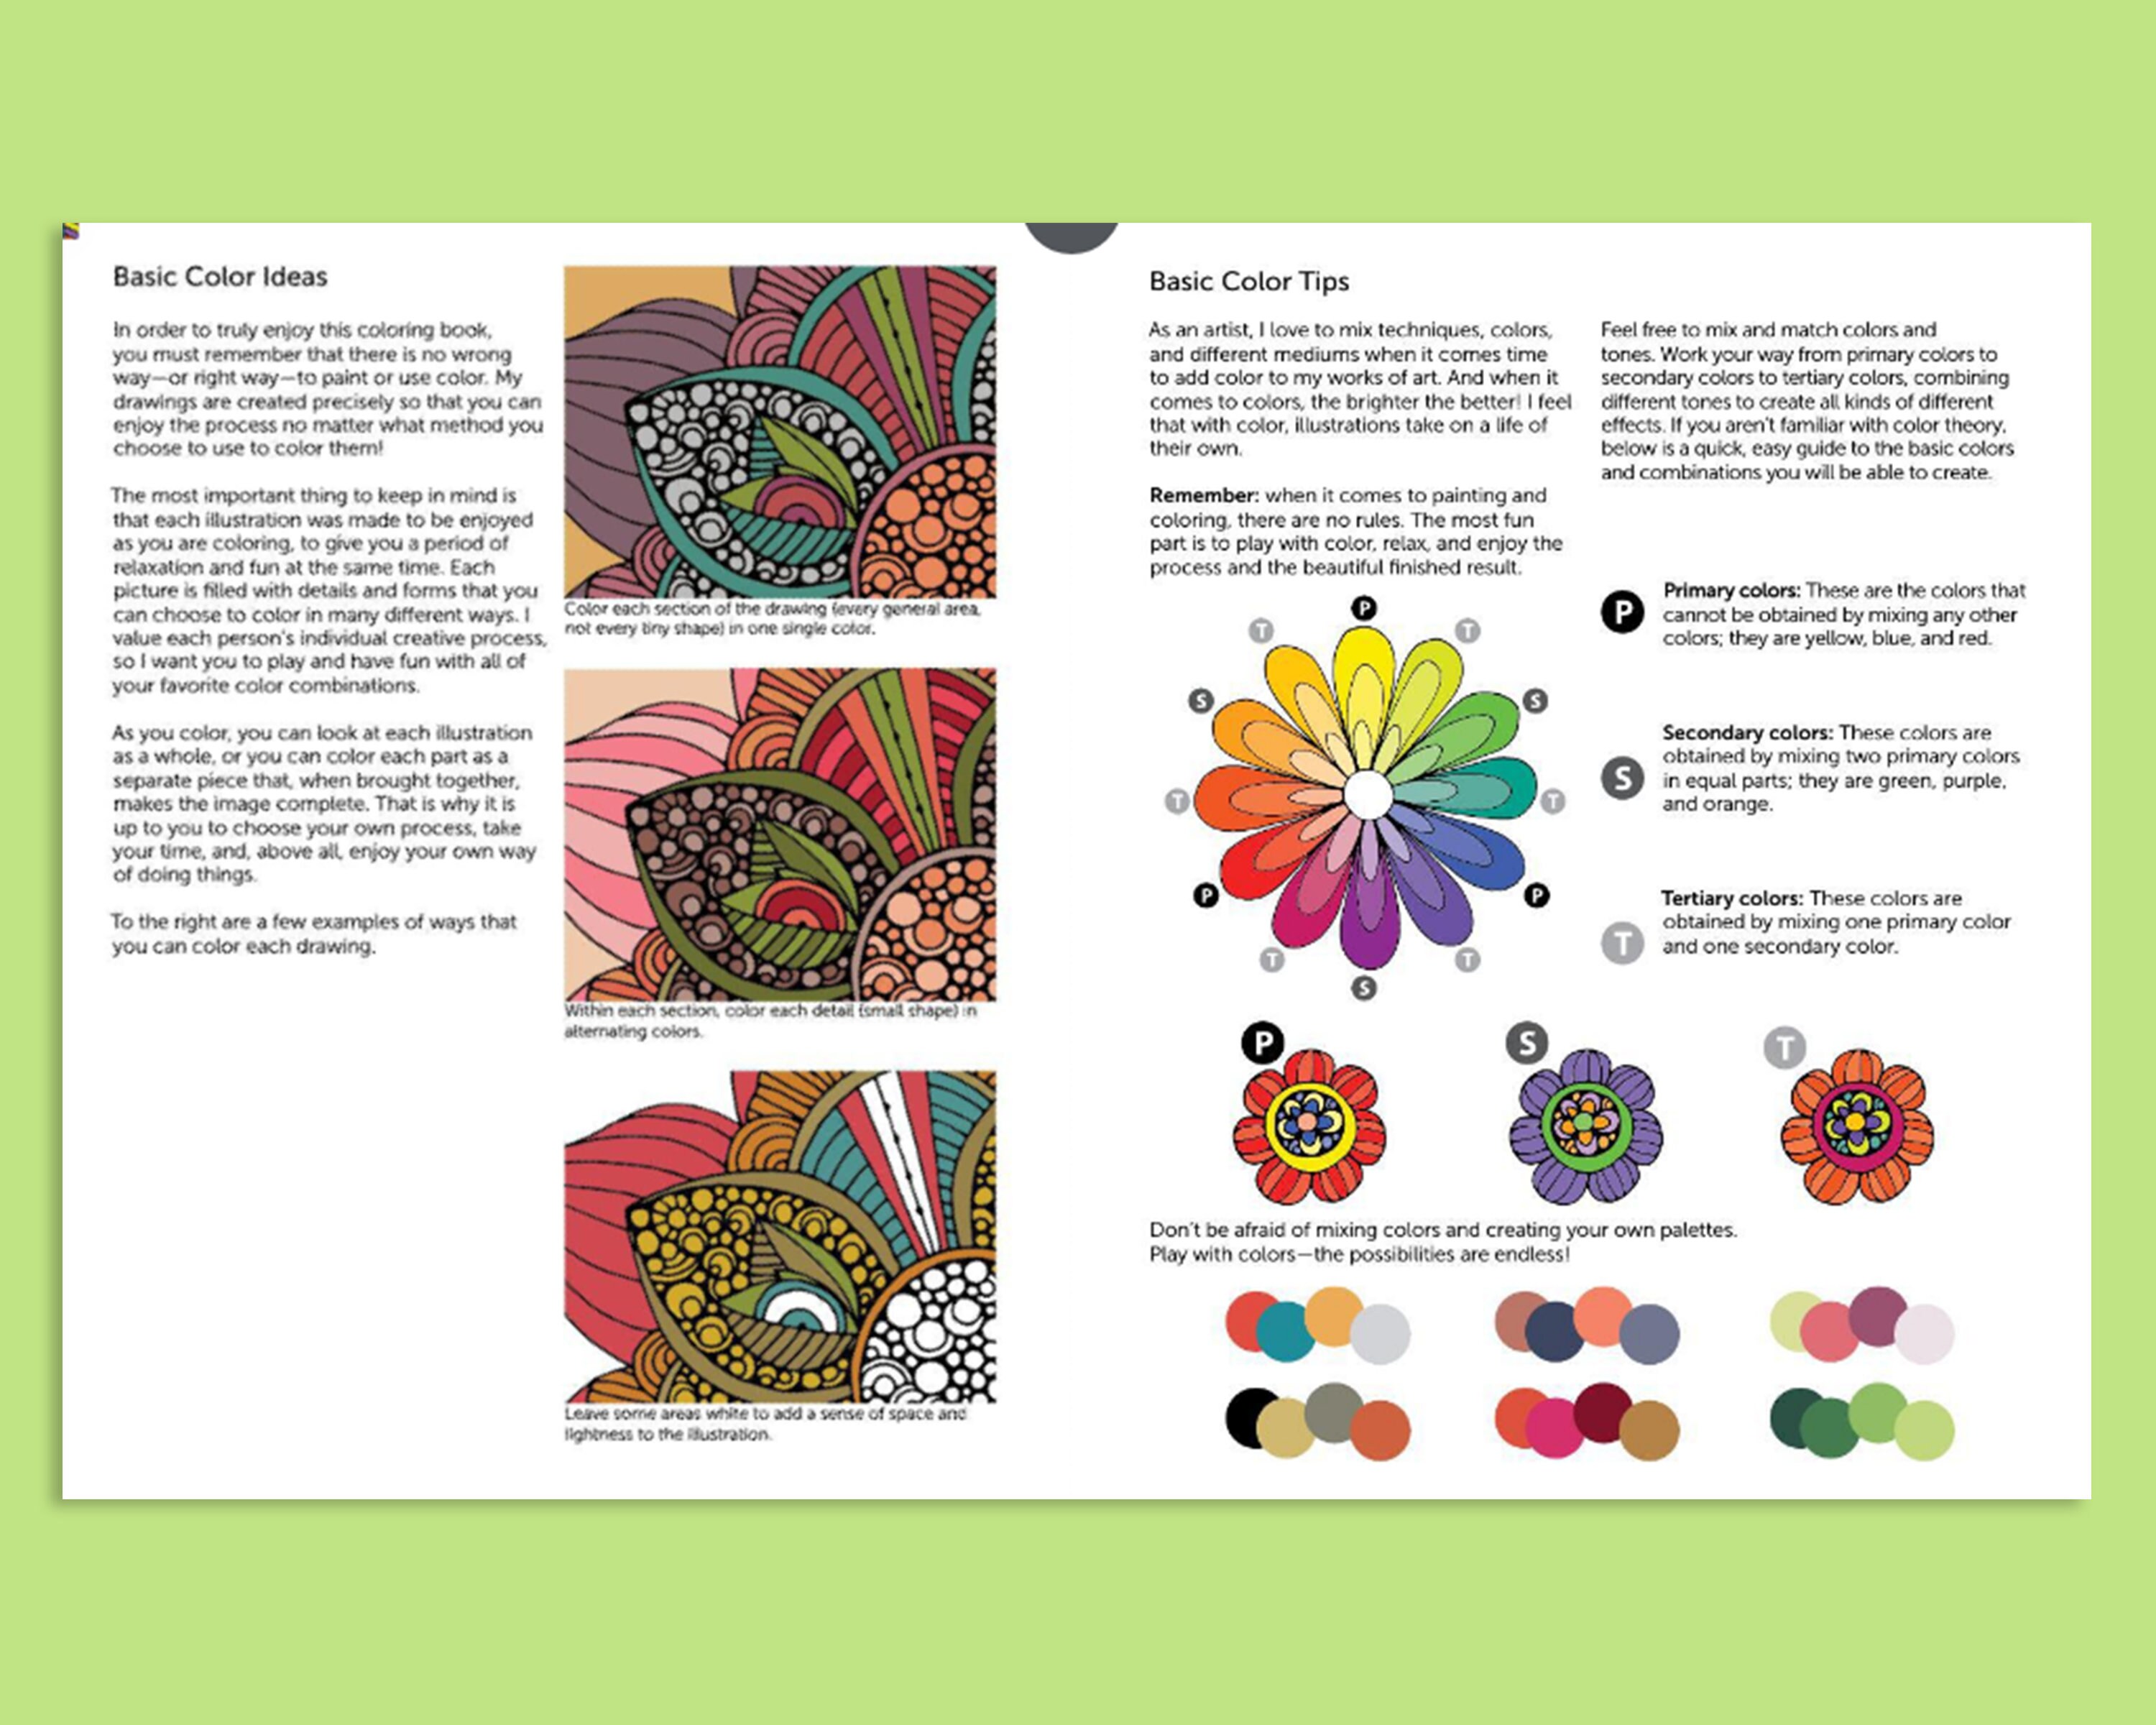 Inspirations - coloriage pour adultes - broché - Collectif, Livre